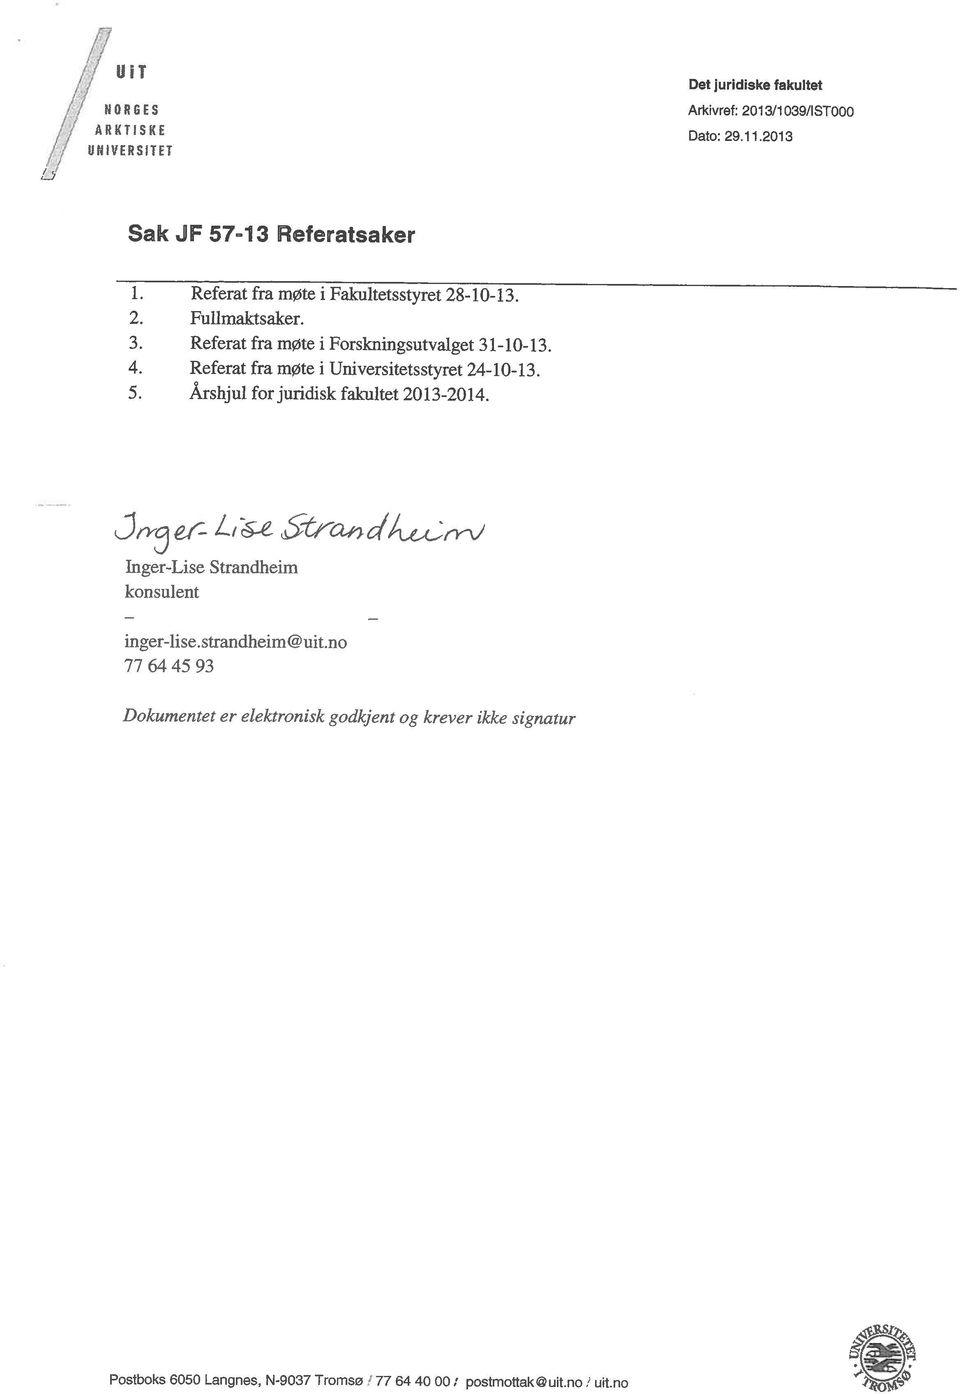 Referat fra møte i Universitetsstyret 24-10-13. 5. Årshjui for juridisk fakultet 2013-2014.